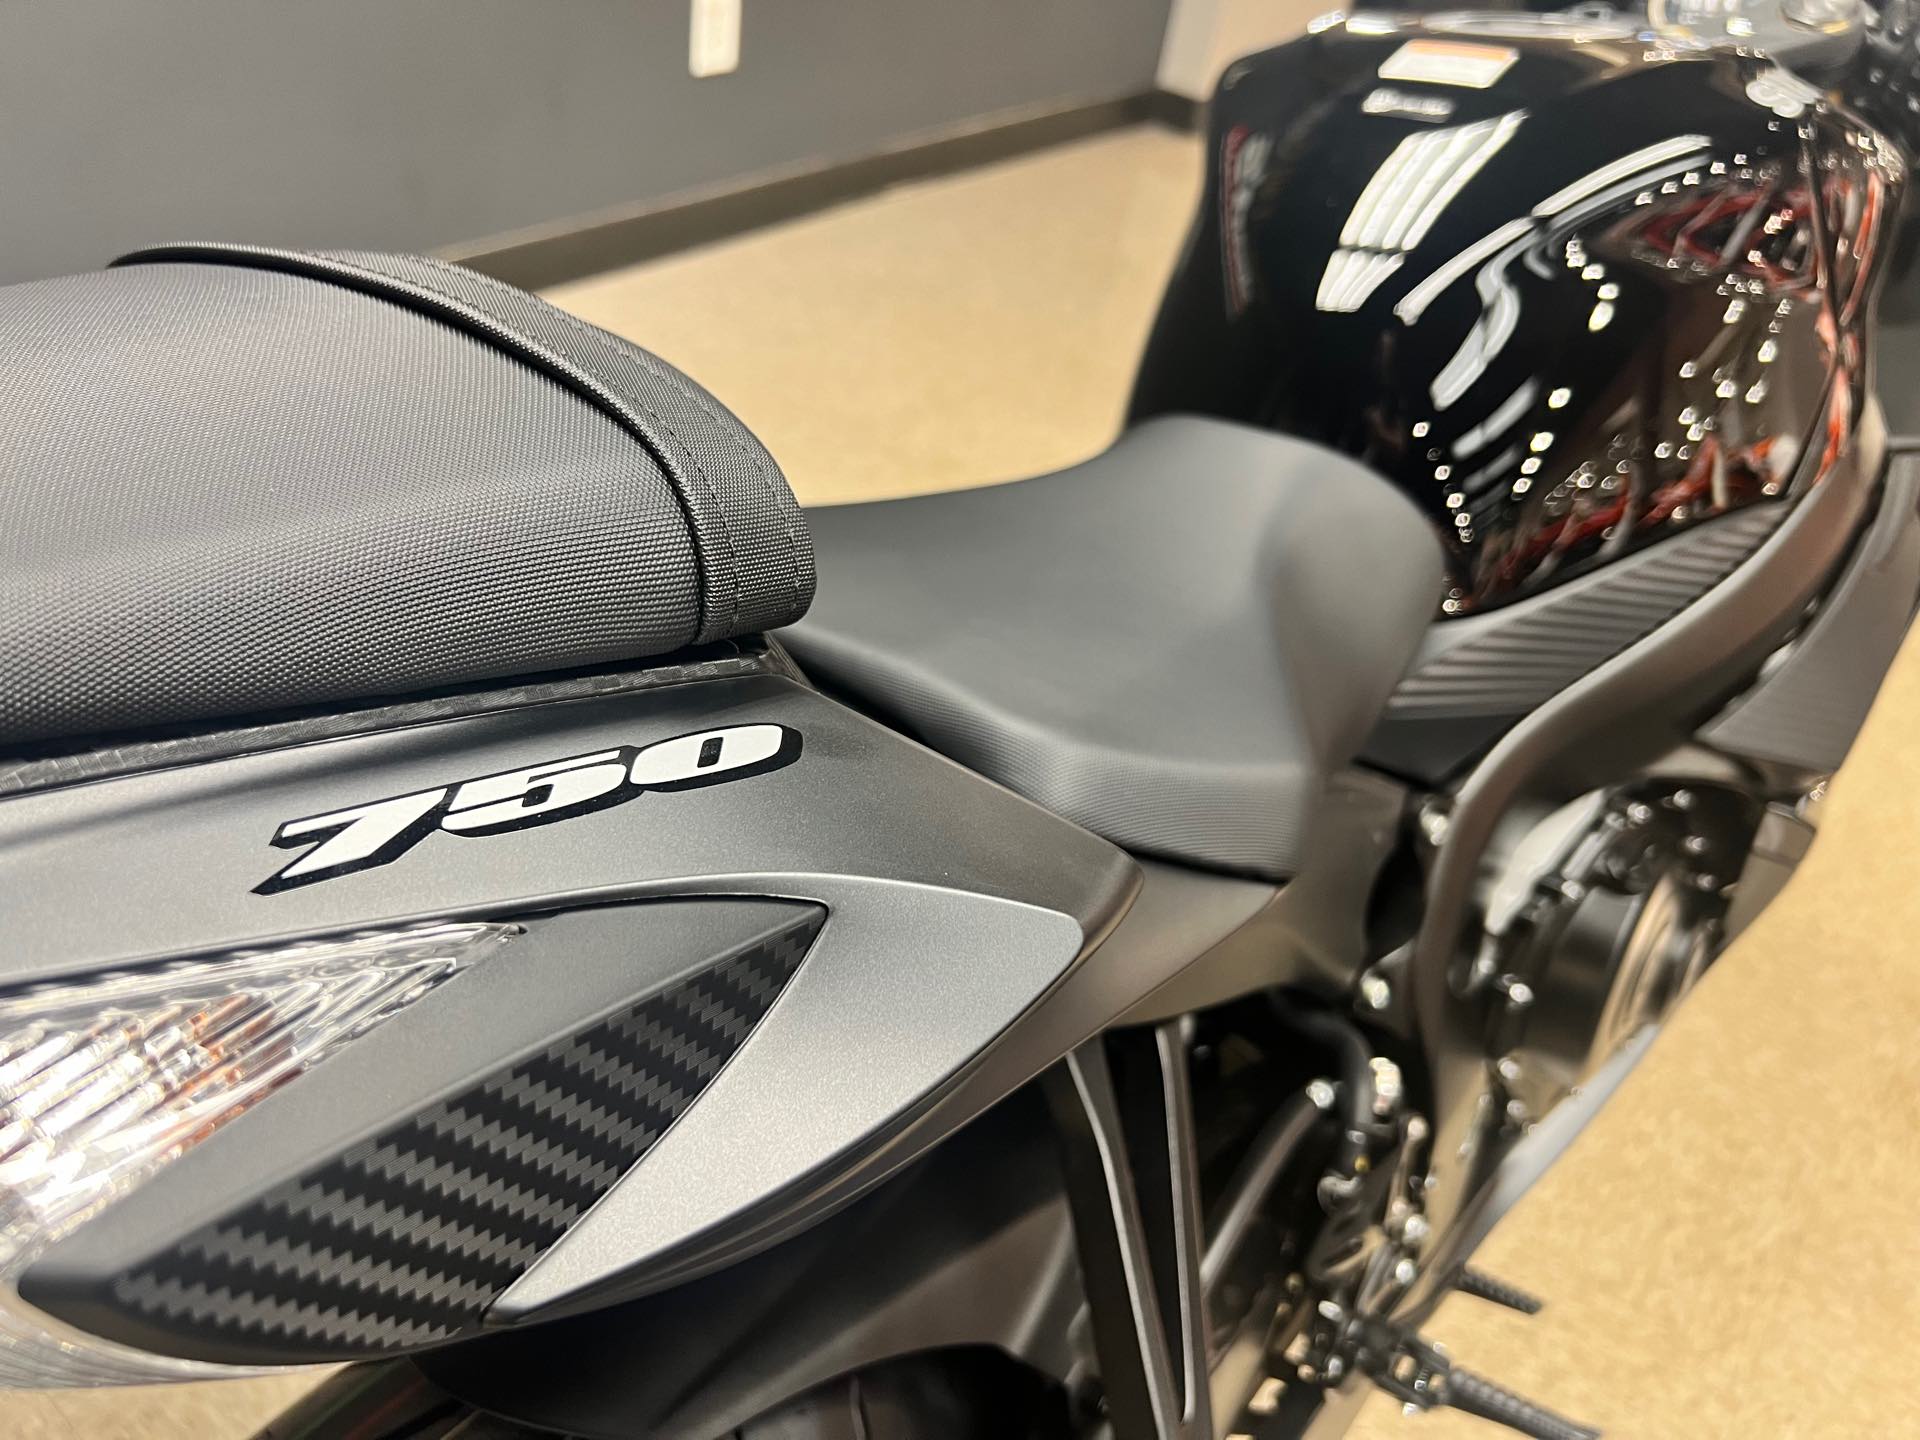 2024 Suzuki GSX-R 750 at Sloans Motorcycle ATV, Murfreesboro, TN, 37129